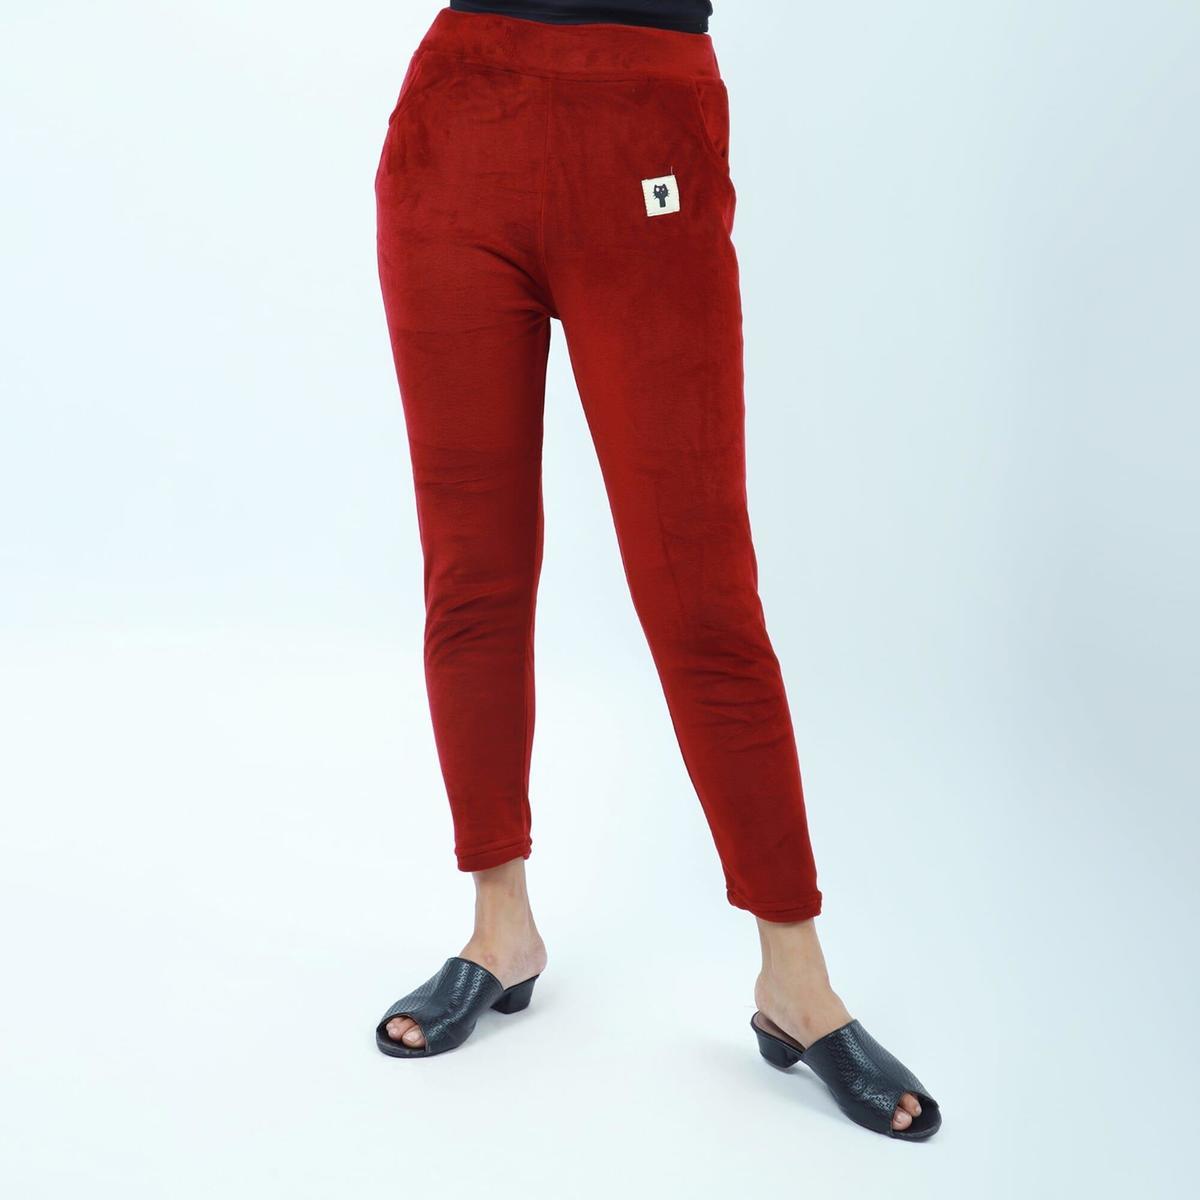 red velvet front pocket design leggings for women